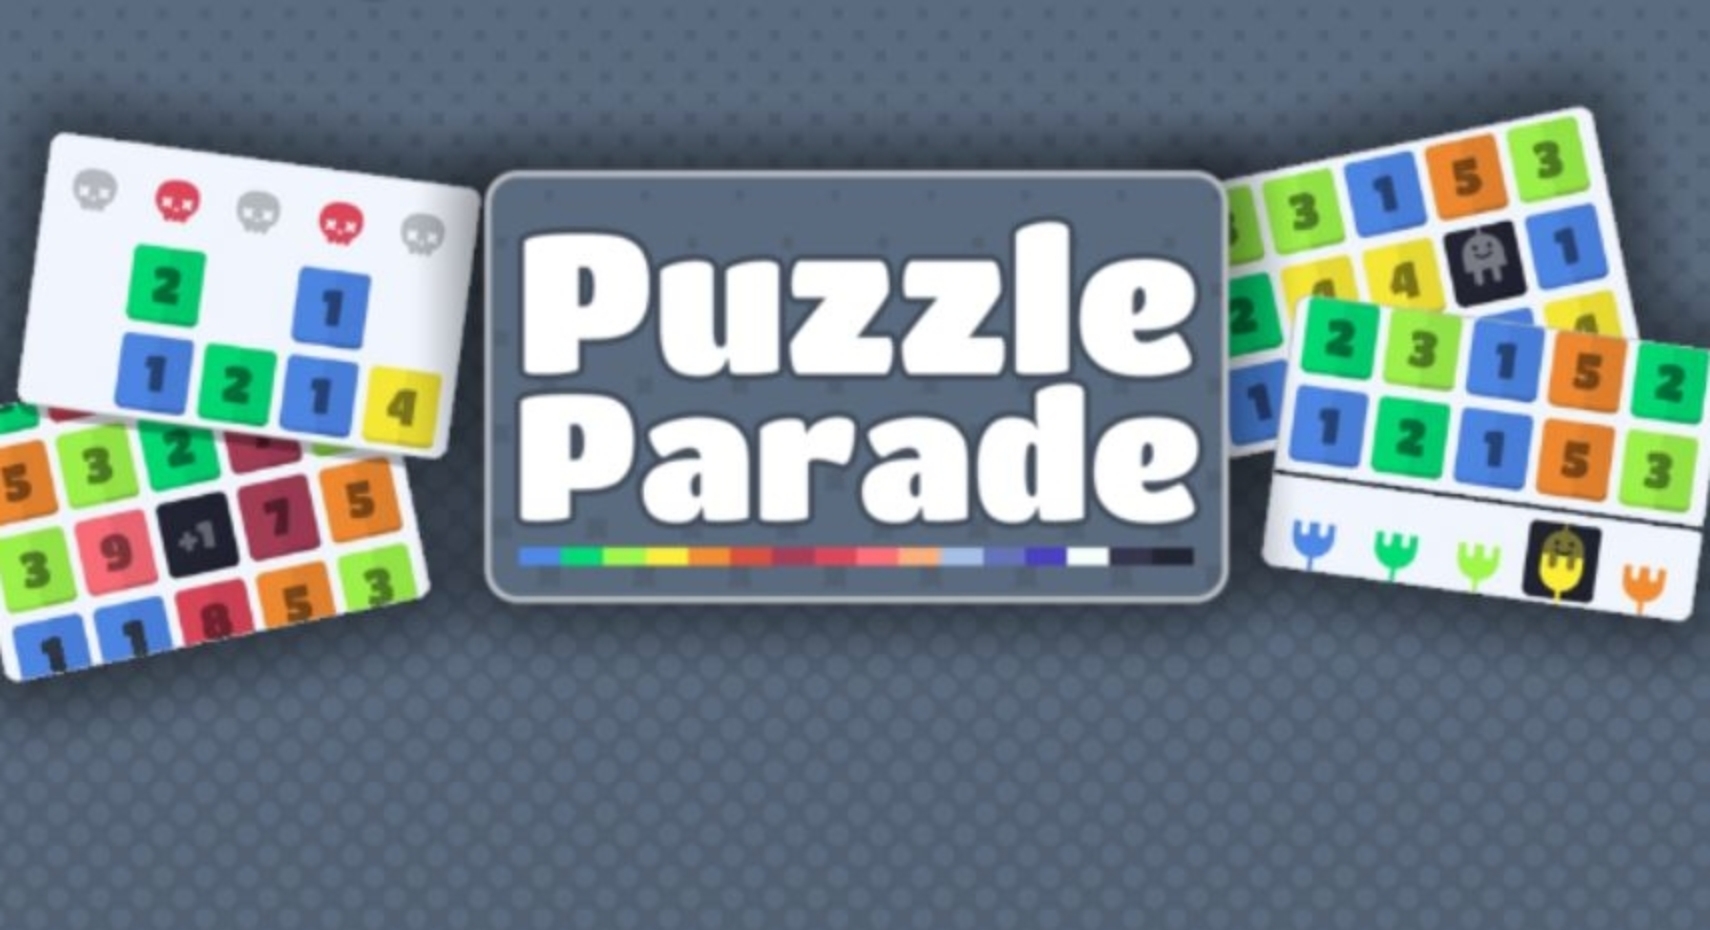 Puzzle Parade demo